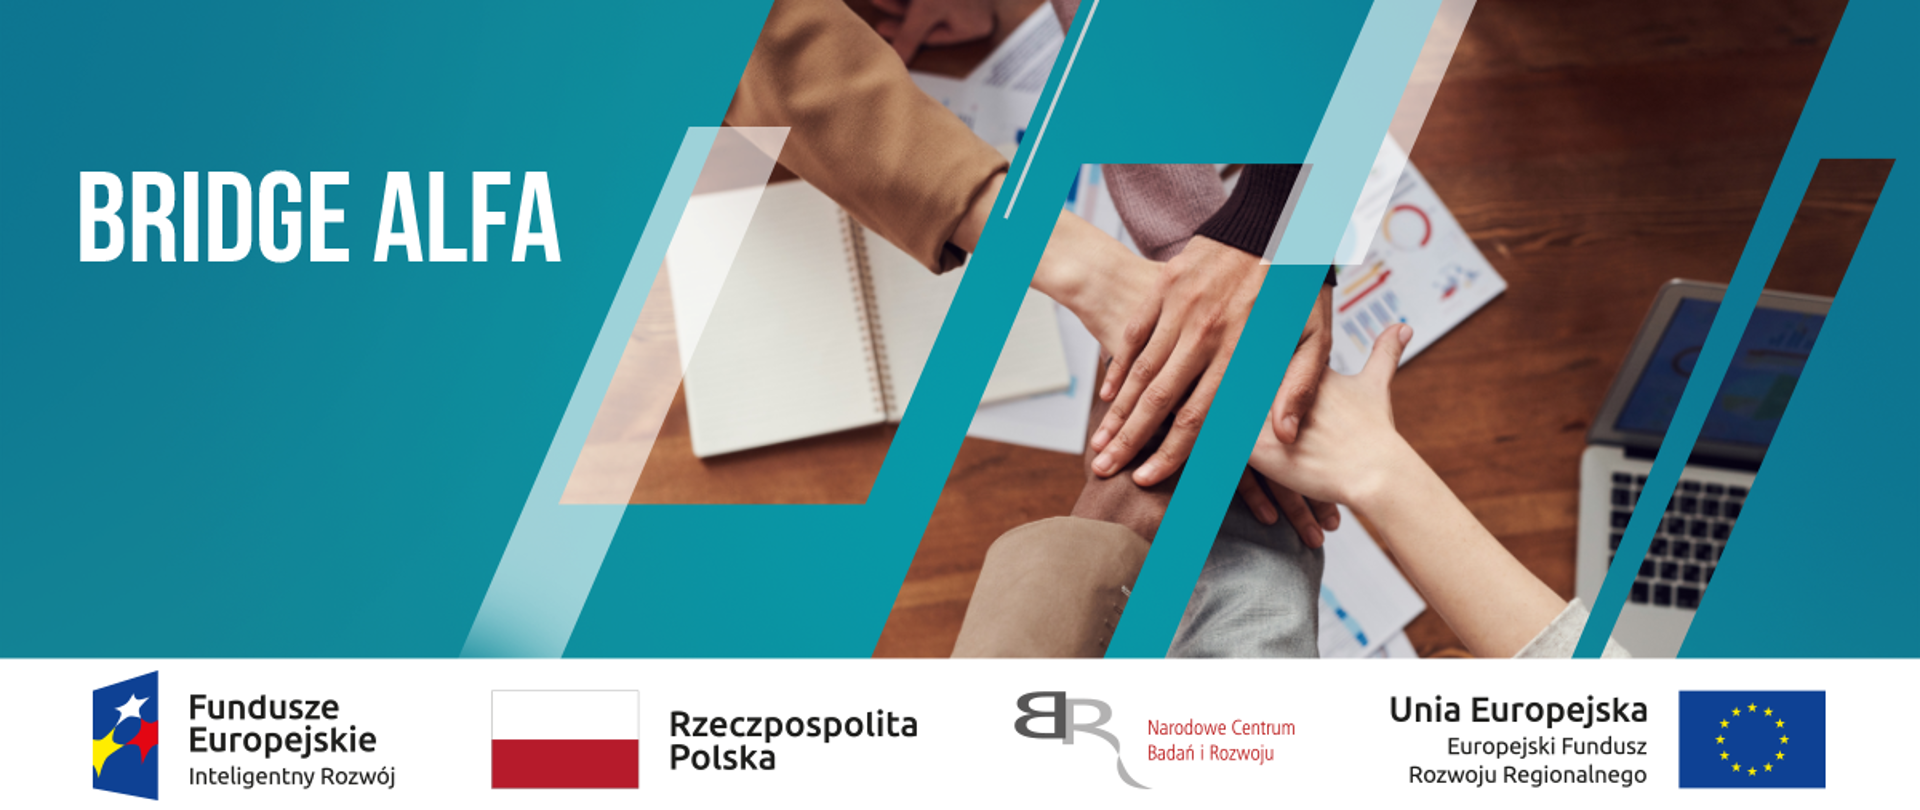 Grafika: napis "Bridge Alfa", po lewej zdjęcie rąk w geście współpracy, tło w kolorze błękitnym, na dole grafiki logotypy: Fundusze Europejskie Inteligentny Rozwój, Rzeczpospolita Polska, NCBR, Unia Europejska Europejski Fundusz Rozwoju Regionalnego.